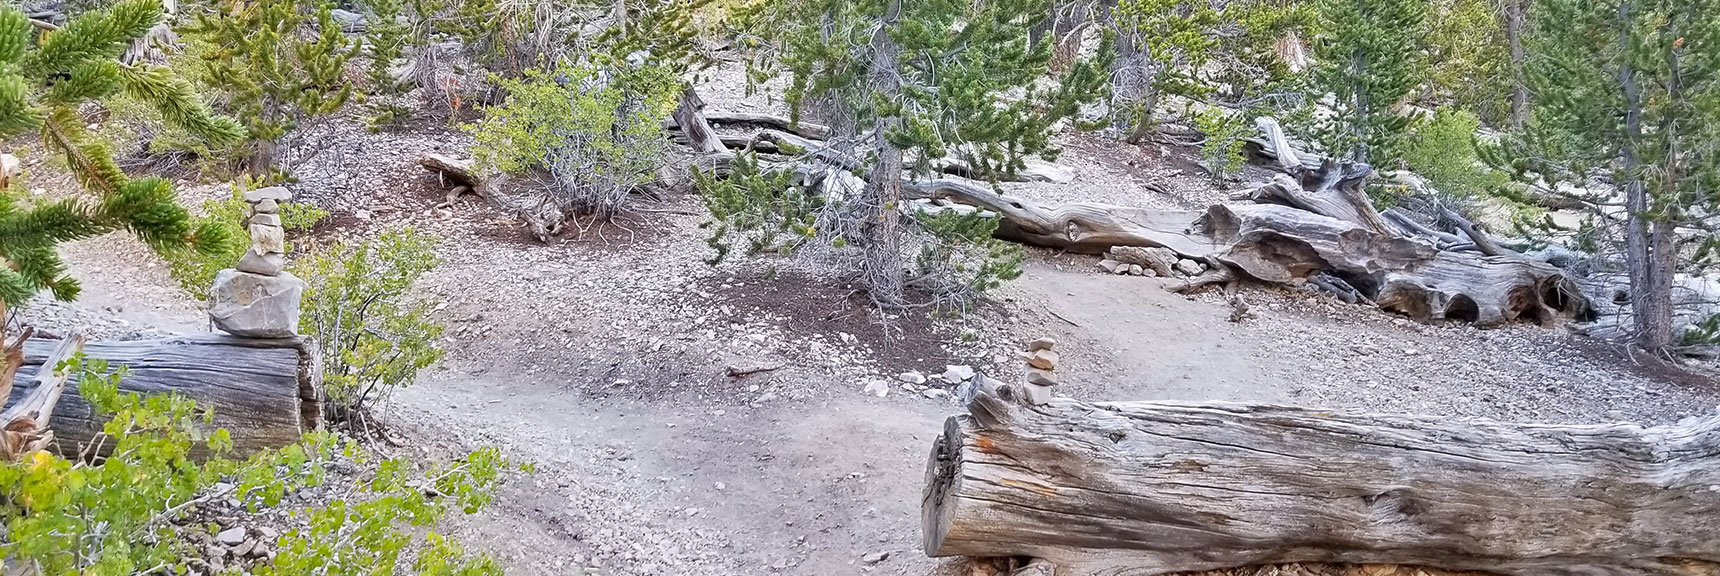 Trail Split-off from North Loop Trail to Fletcher Peak Trail | Mummy Mountain NNE, Mt. Charleston Wilderness, Nevada, Slide 008